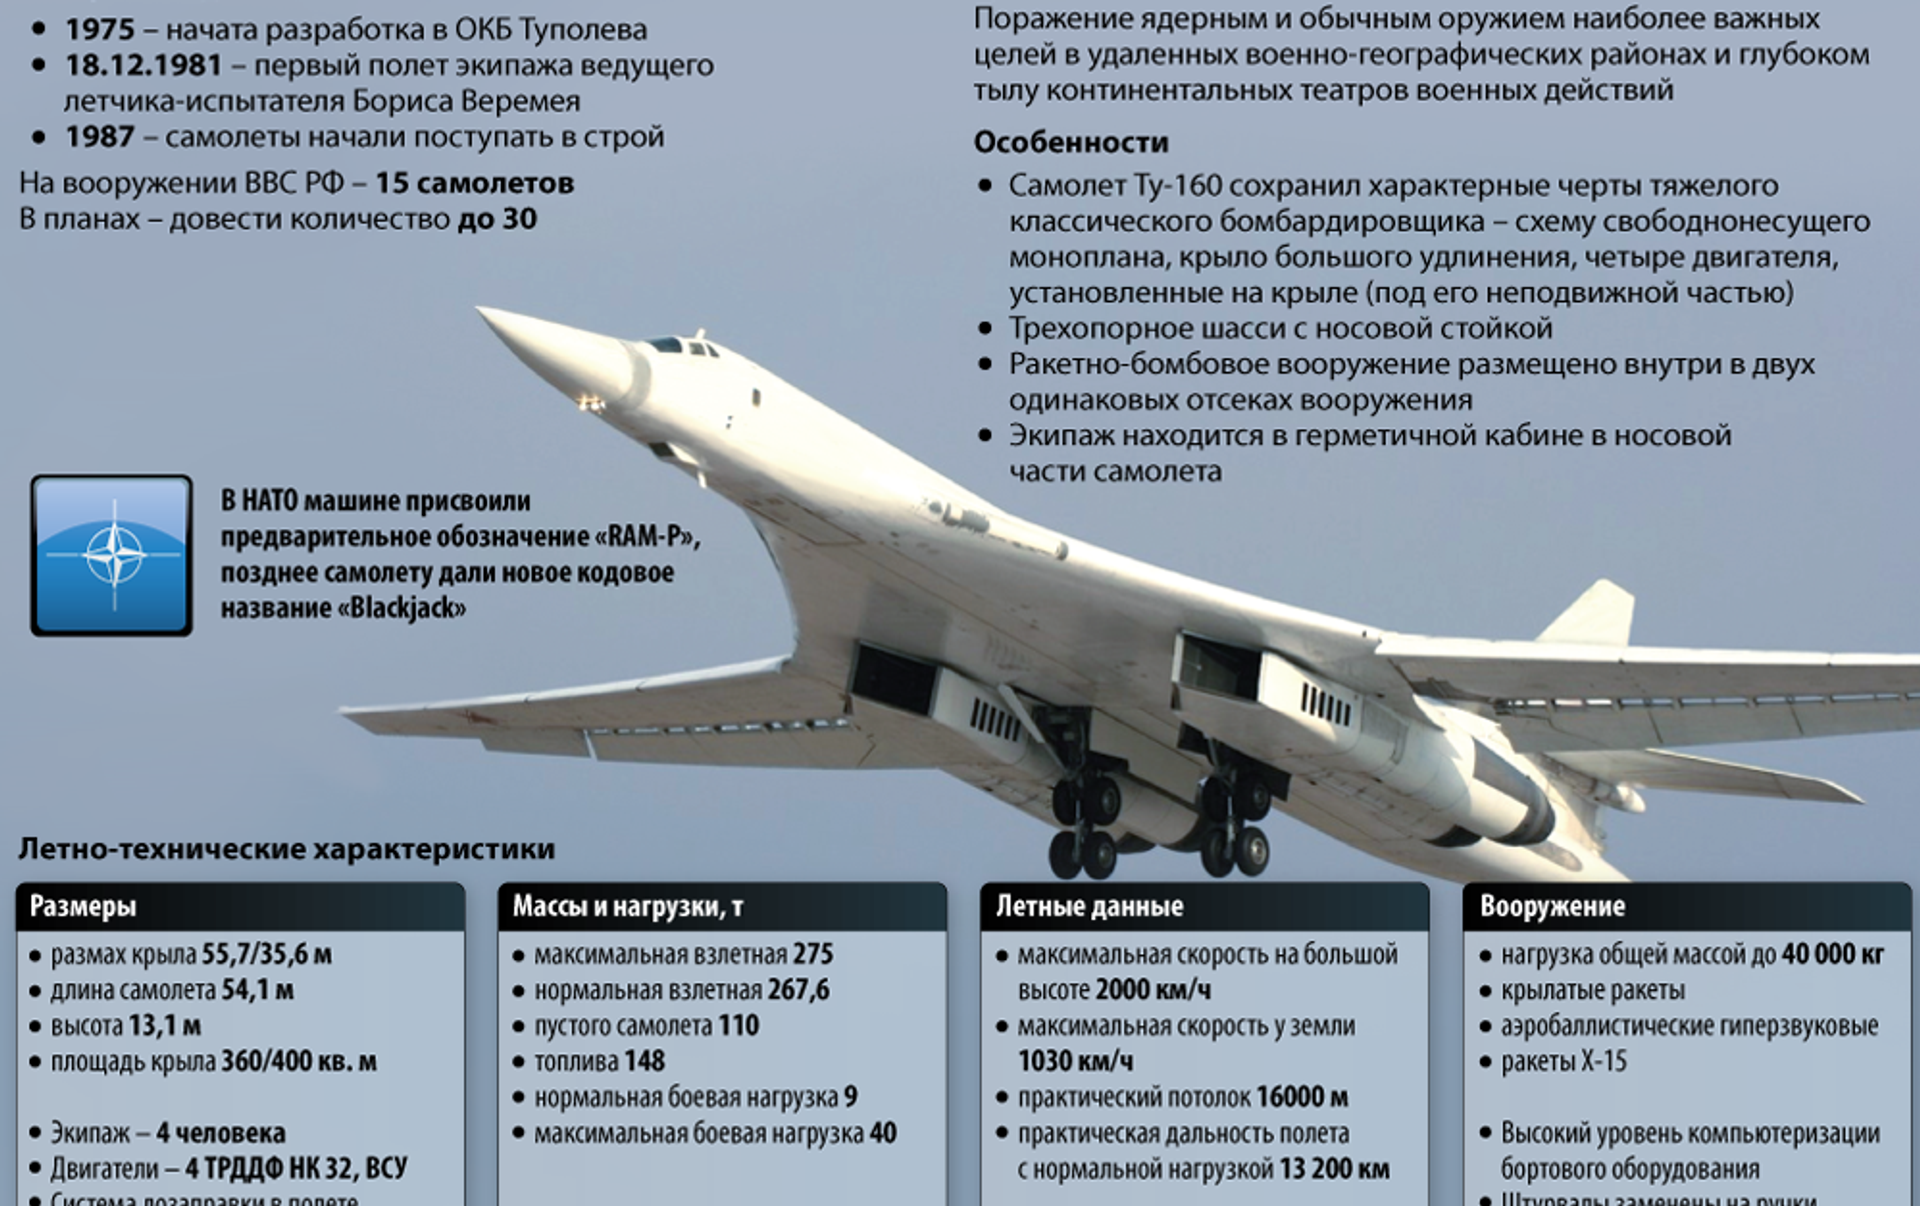 Ту 160 сверхзвуковой характеристики. Белый лебедь самолет ту 160 характеристики. Технические характеристики самолета ту 160 белый лебедь. Стратегический бомбардировщик ту-160 белый лебедь. Ту-160 сверхзвуковой самолёт характеристики.